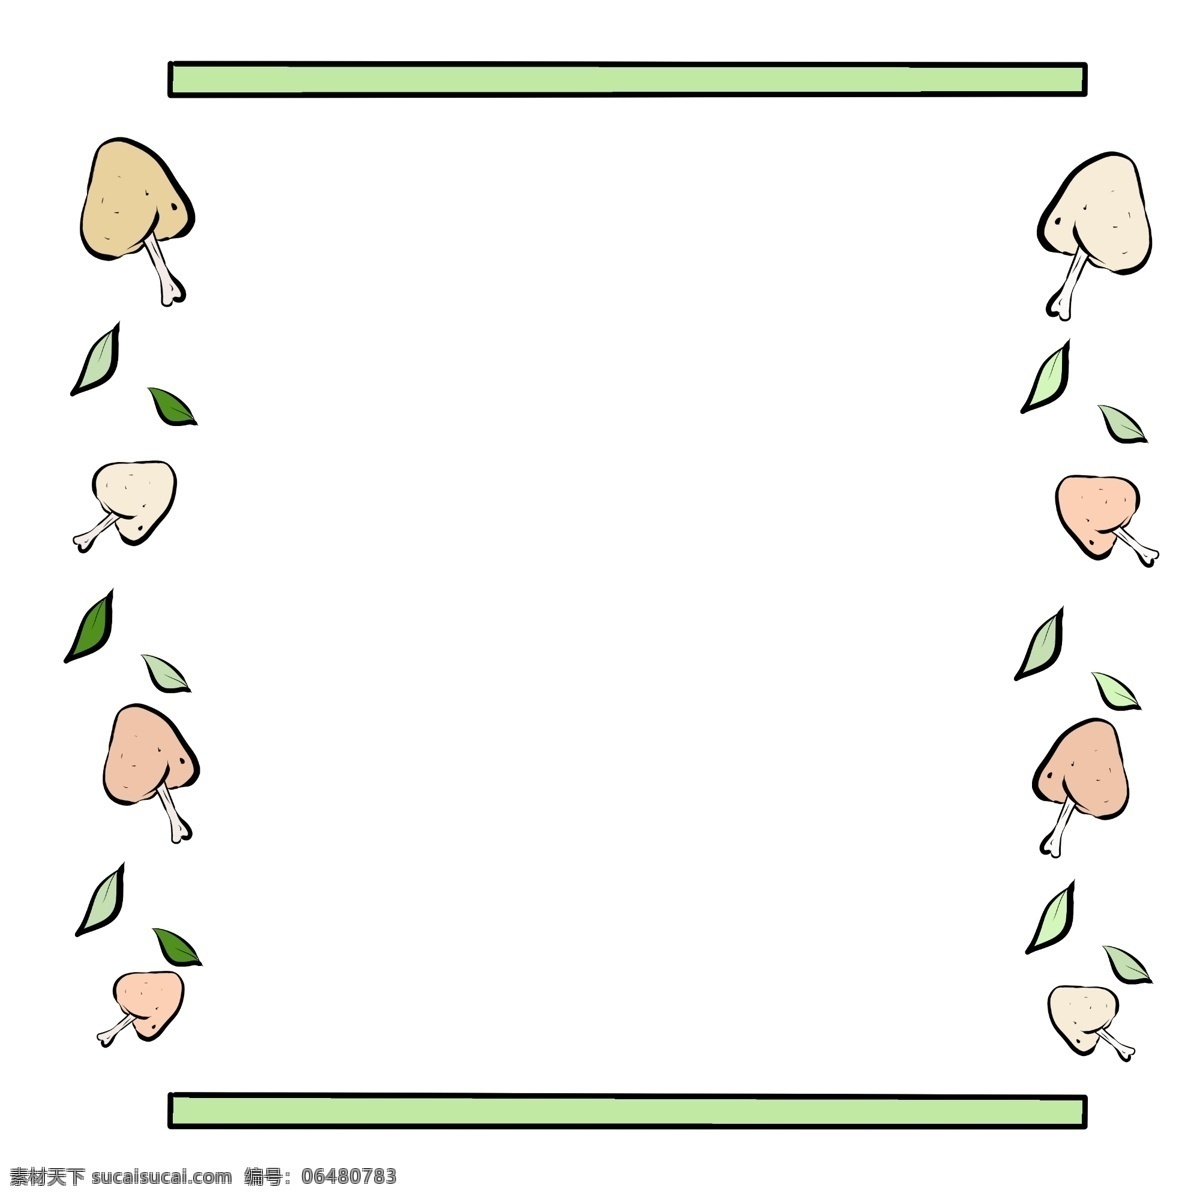 绿色 食物 边框 插画 卡通食物边框 绿色的边框 边框插画 绿色边框插画 食物边框 精美的边框